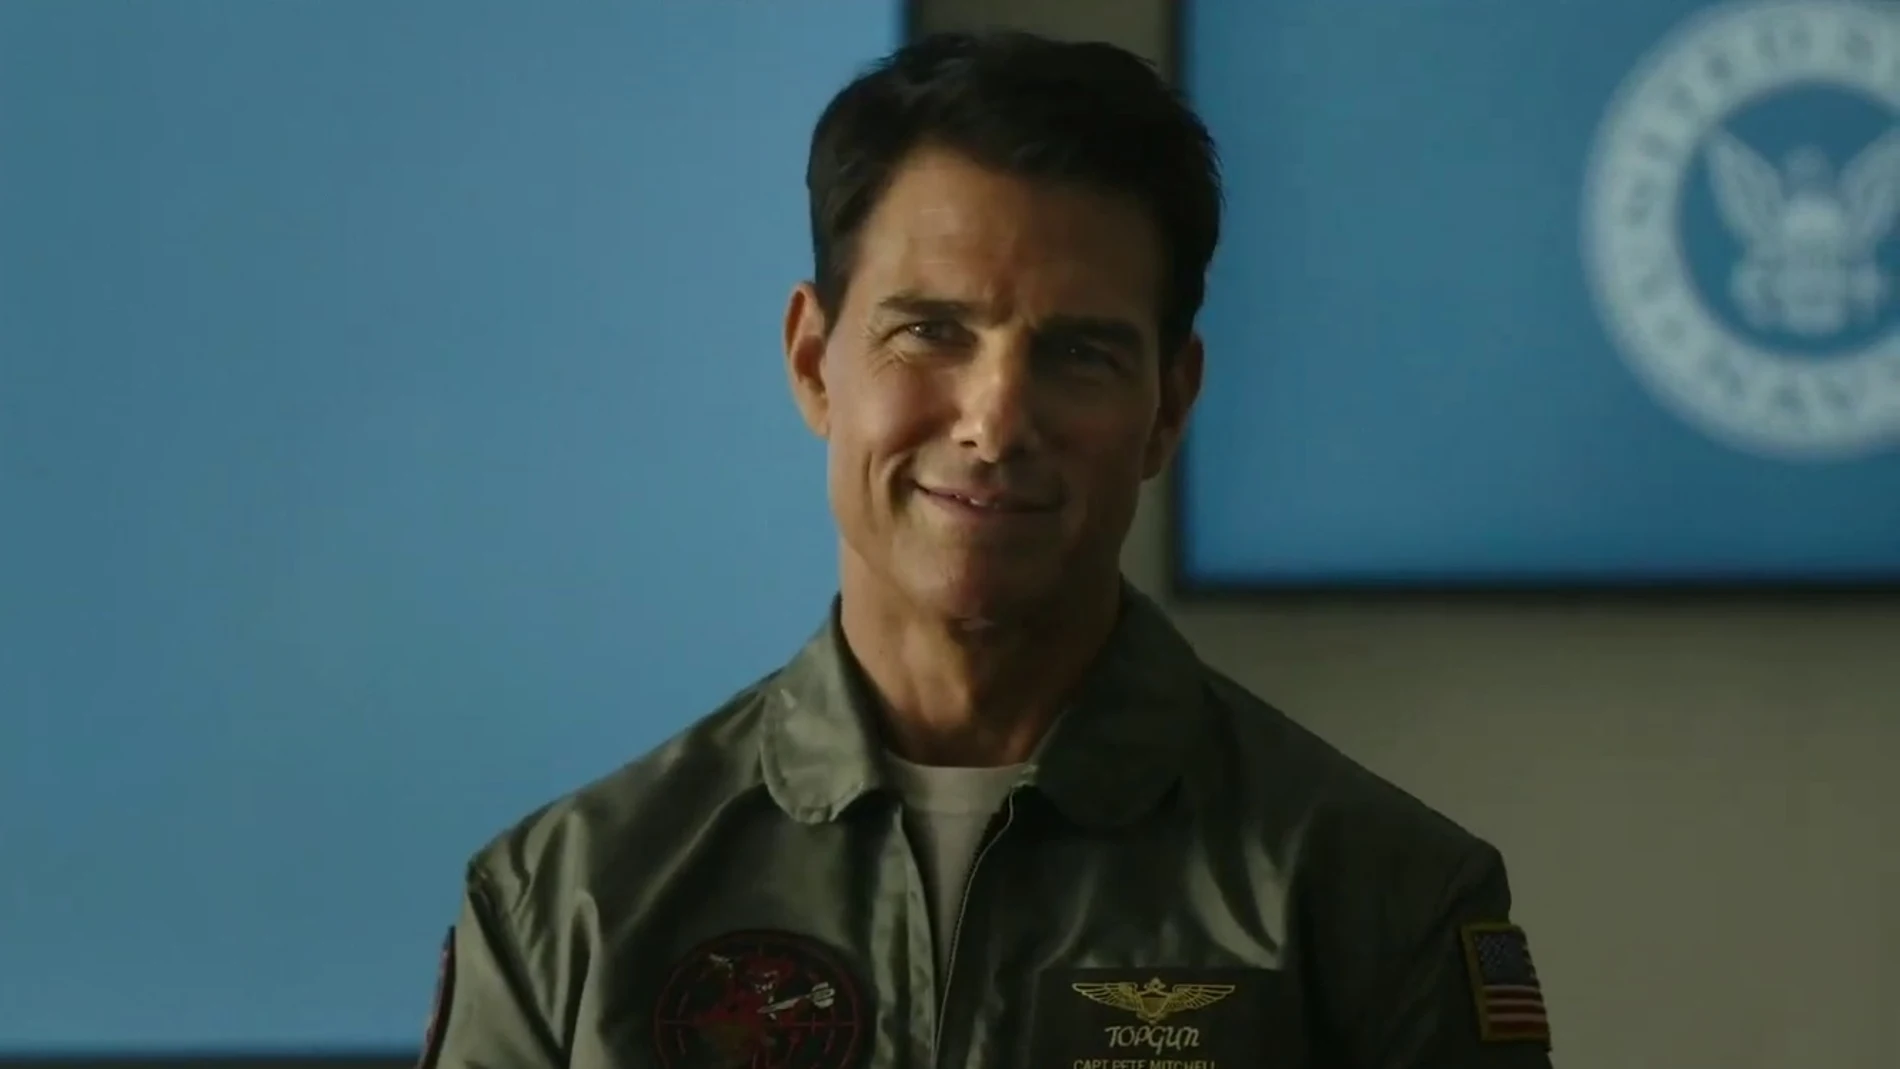 Tom Cruise en el tráiler de 'Top Gun: Maverick'